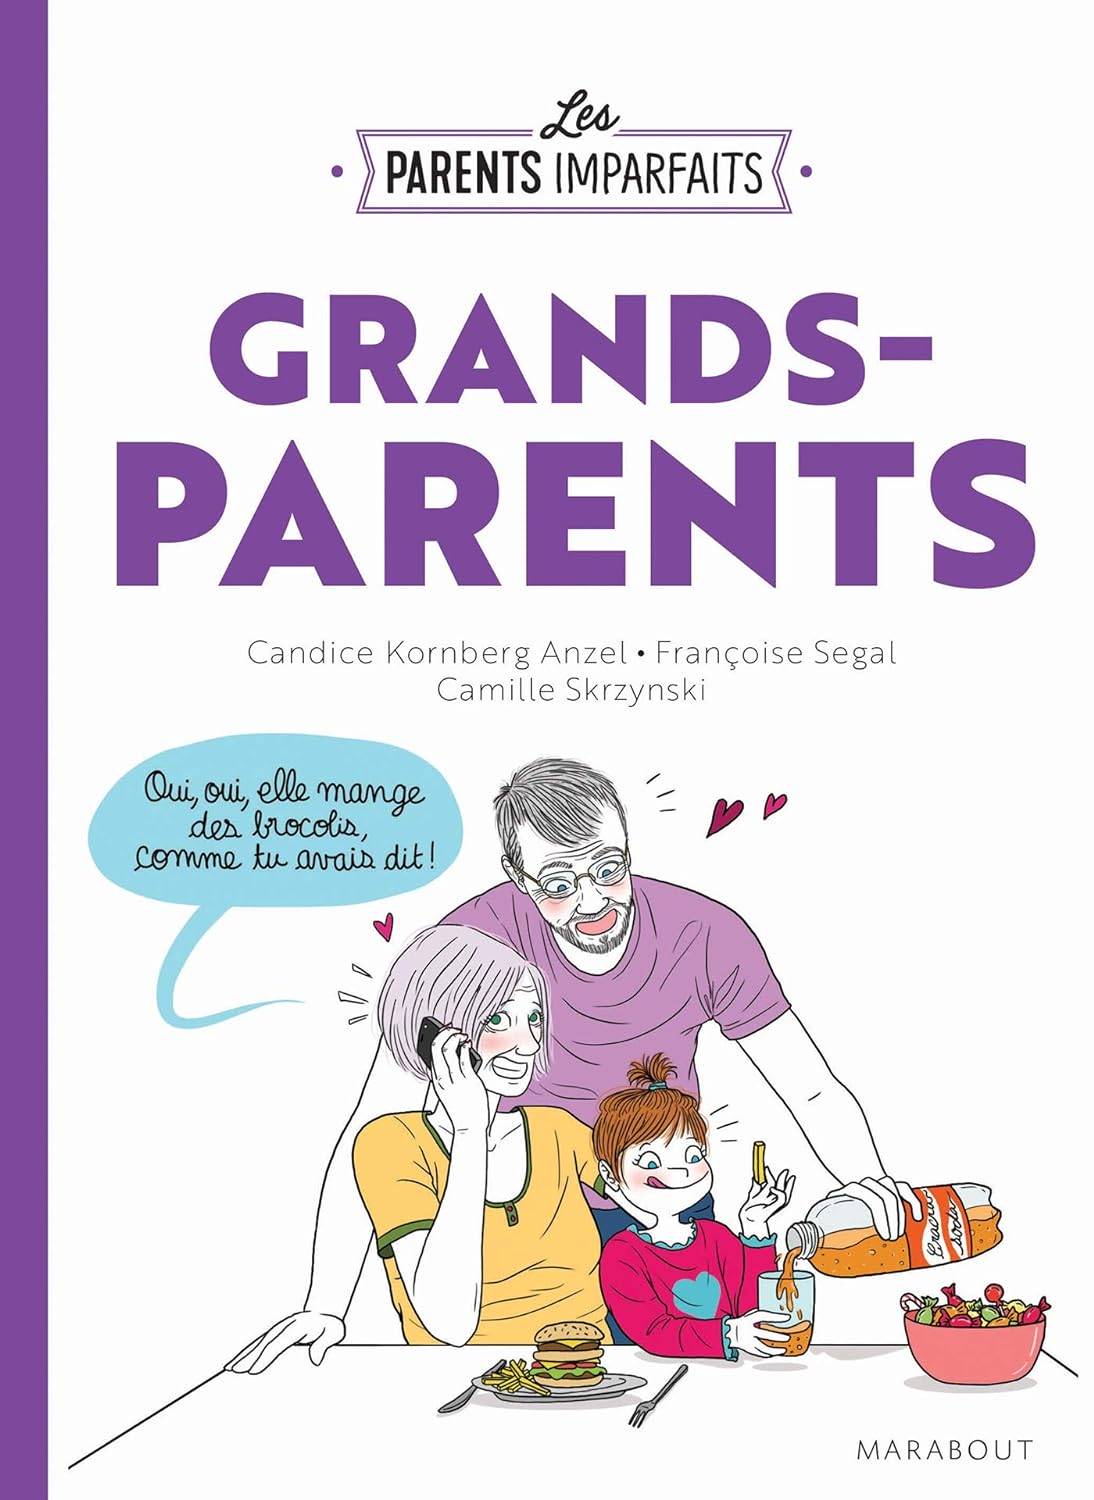 Grands-parents imparfaits